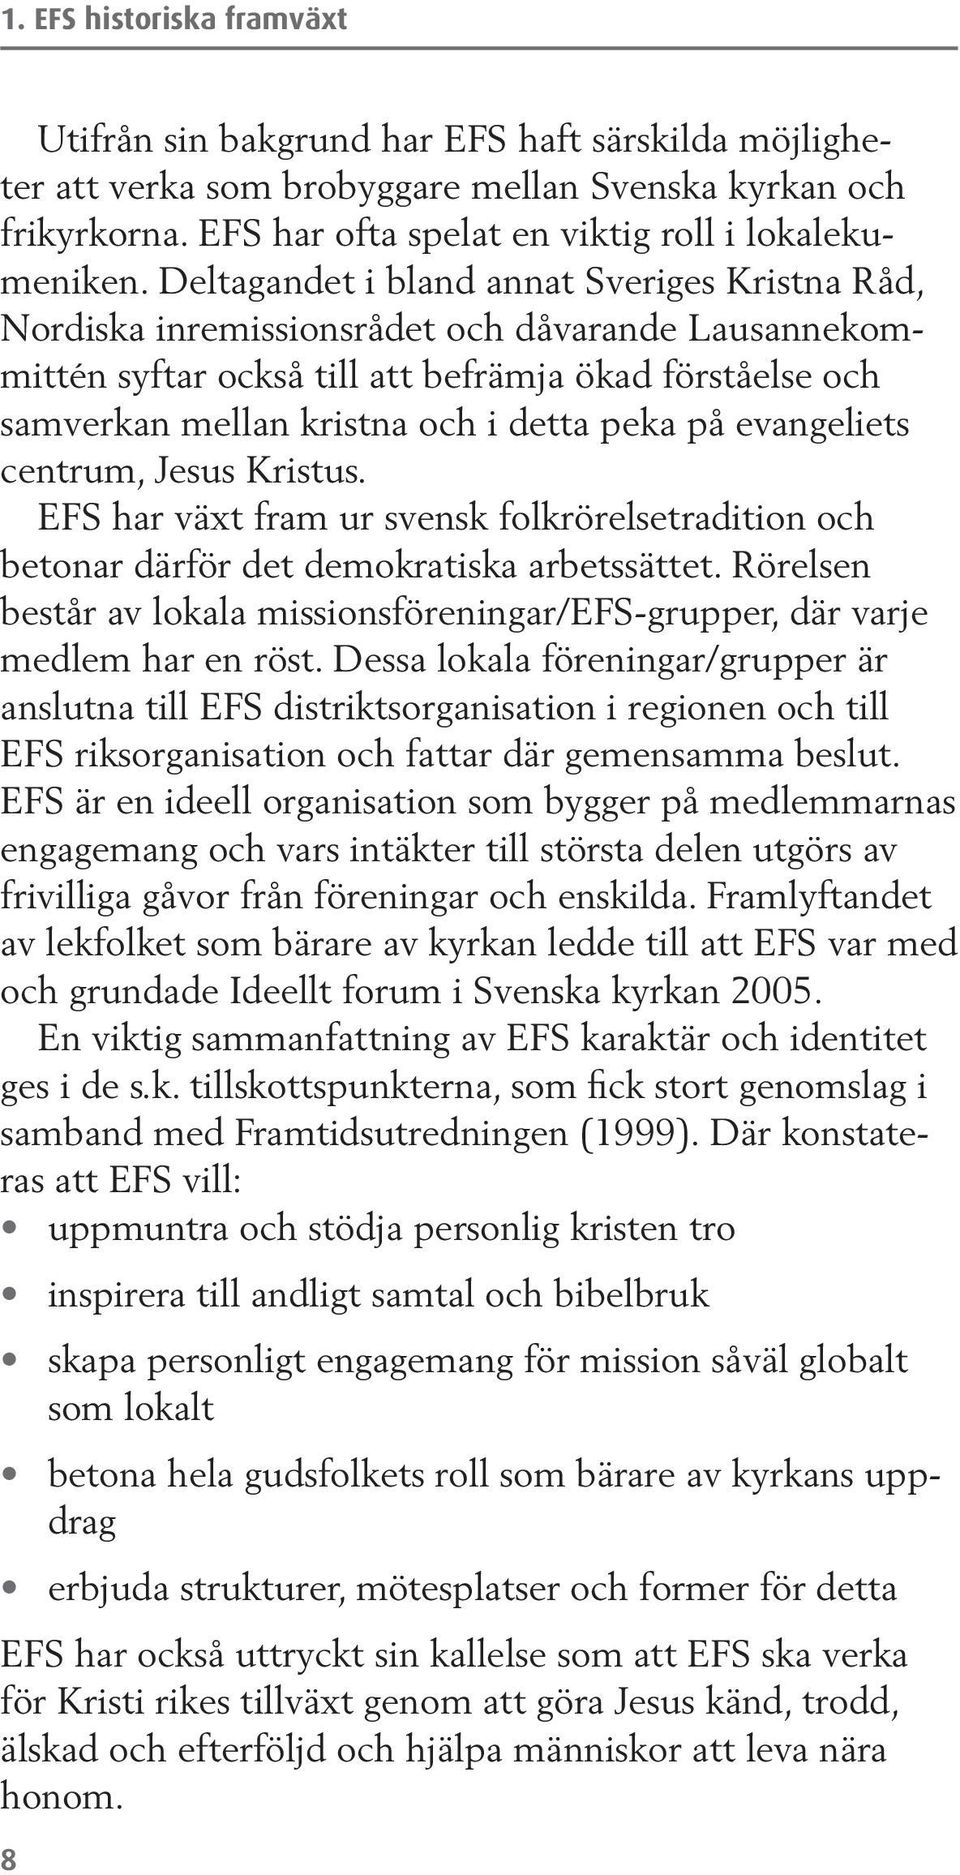 på evangeliets centrum, Jesus Kristus. EFS har växt fram ur svensk folkrörelsetradition och betonar därför det demokratiska arbetssättet.